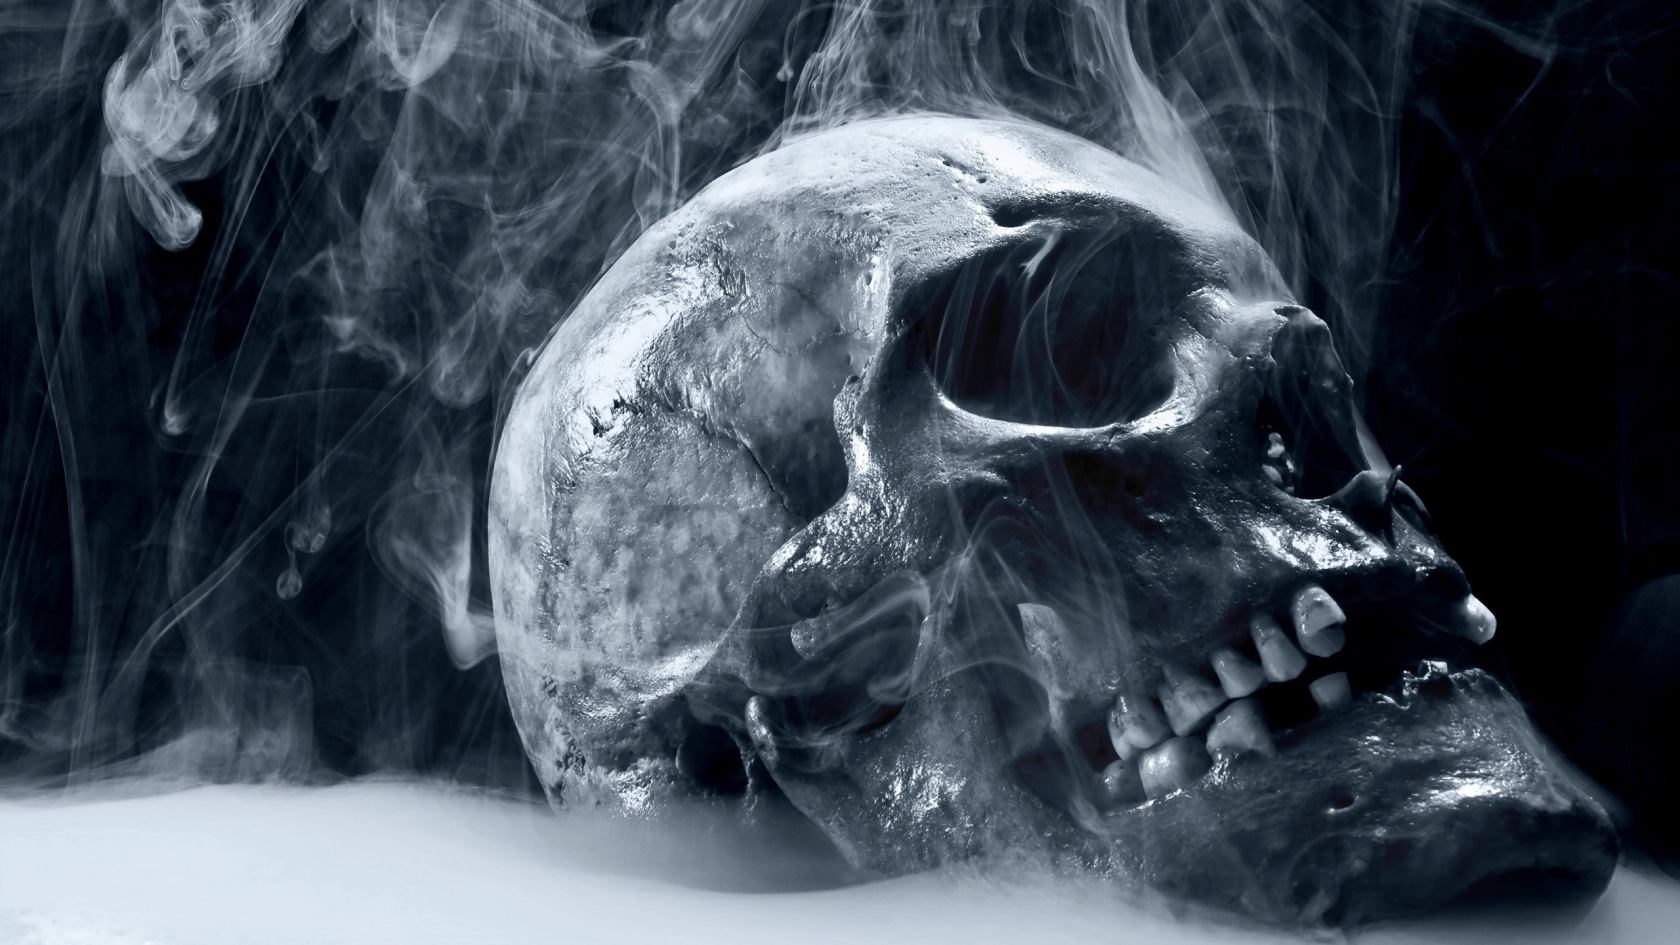 Skull Smoking for 1680 x 945 HDTV resolution